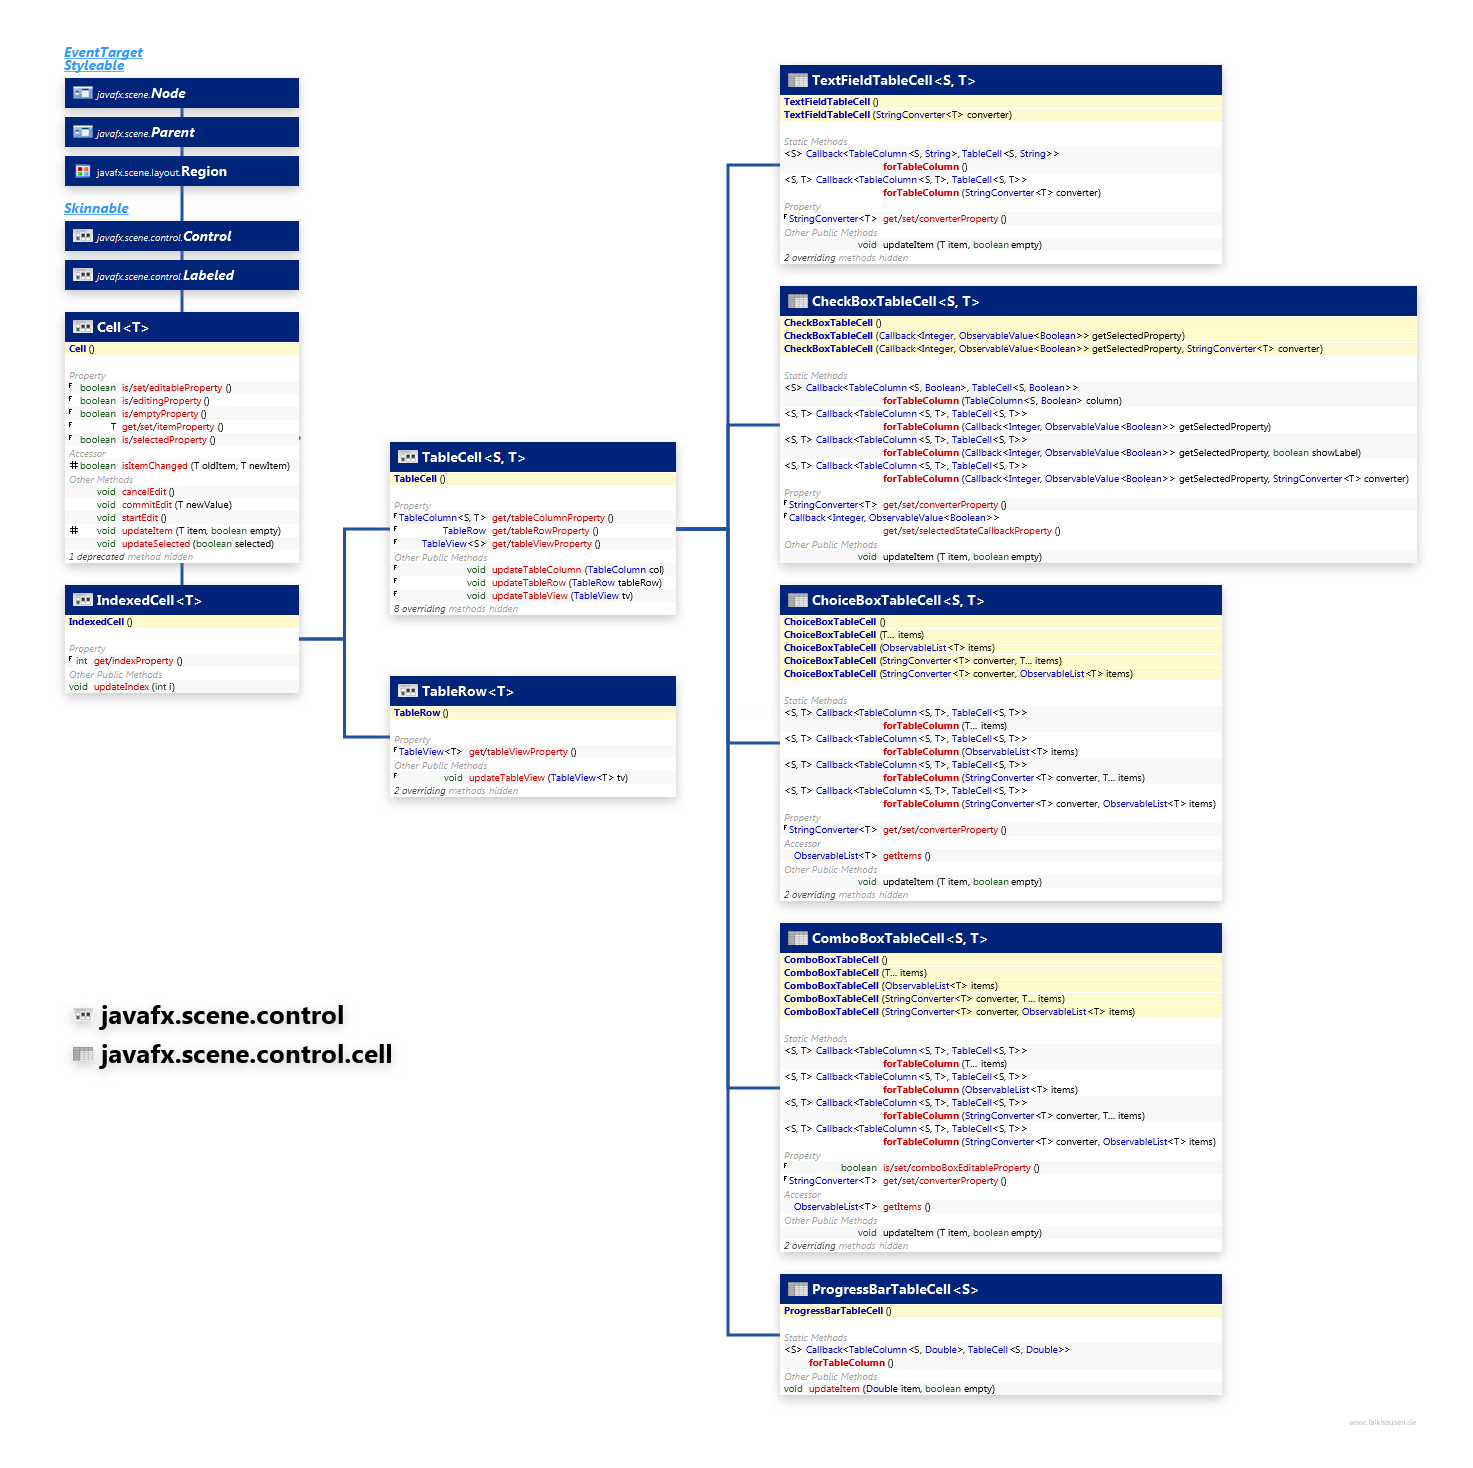 javafx.scene.control.cell javafx.scene.control TableCell class diagram and api documentation for JavaFX 8